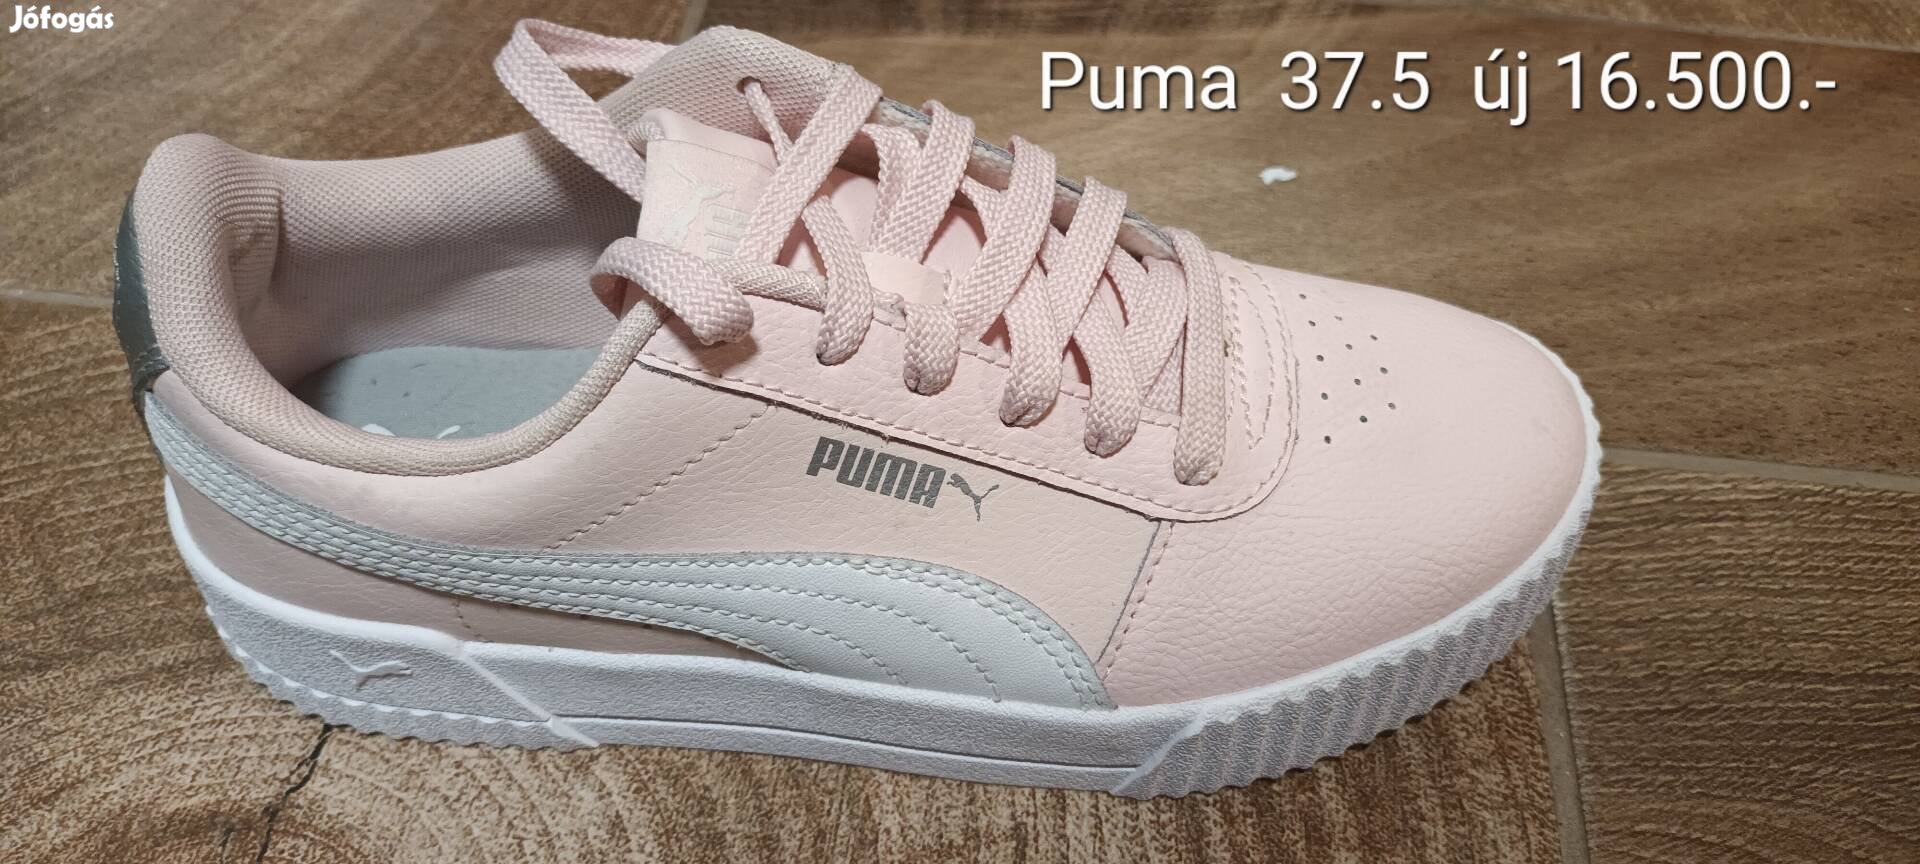 Puma 37.5-es új